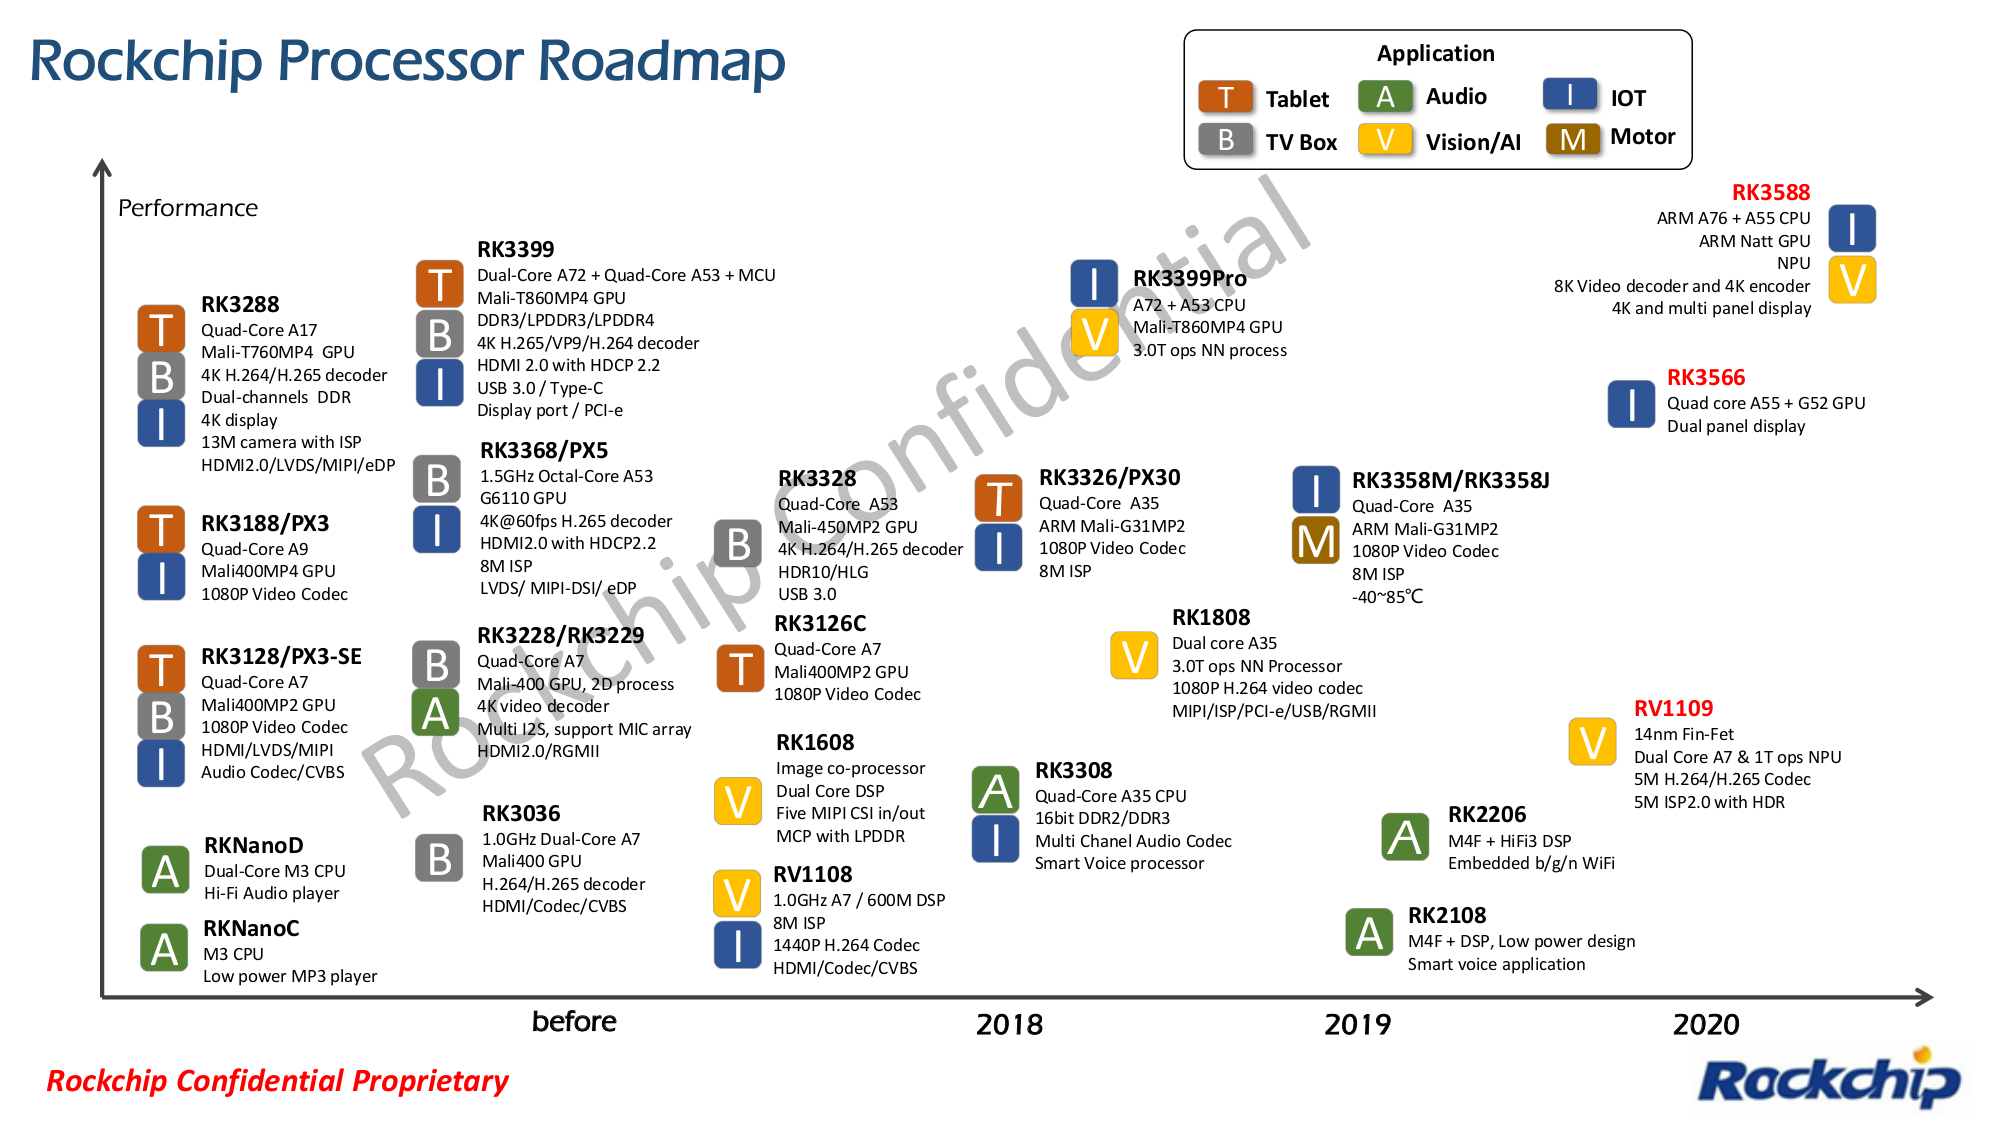 Rockchip Processor Roadmap 2020 - RK3566, RK3588, RV1109